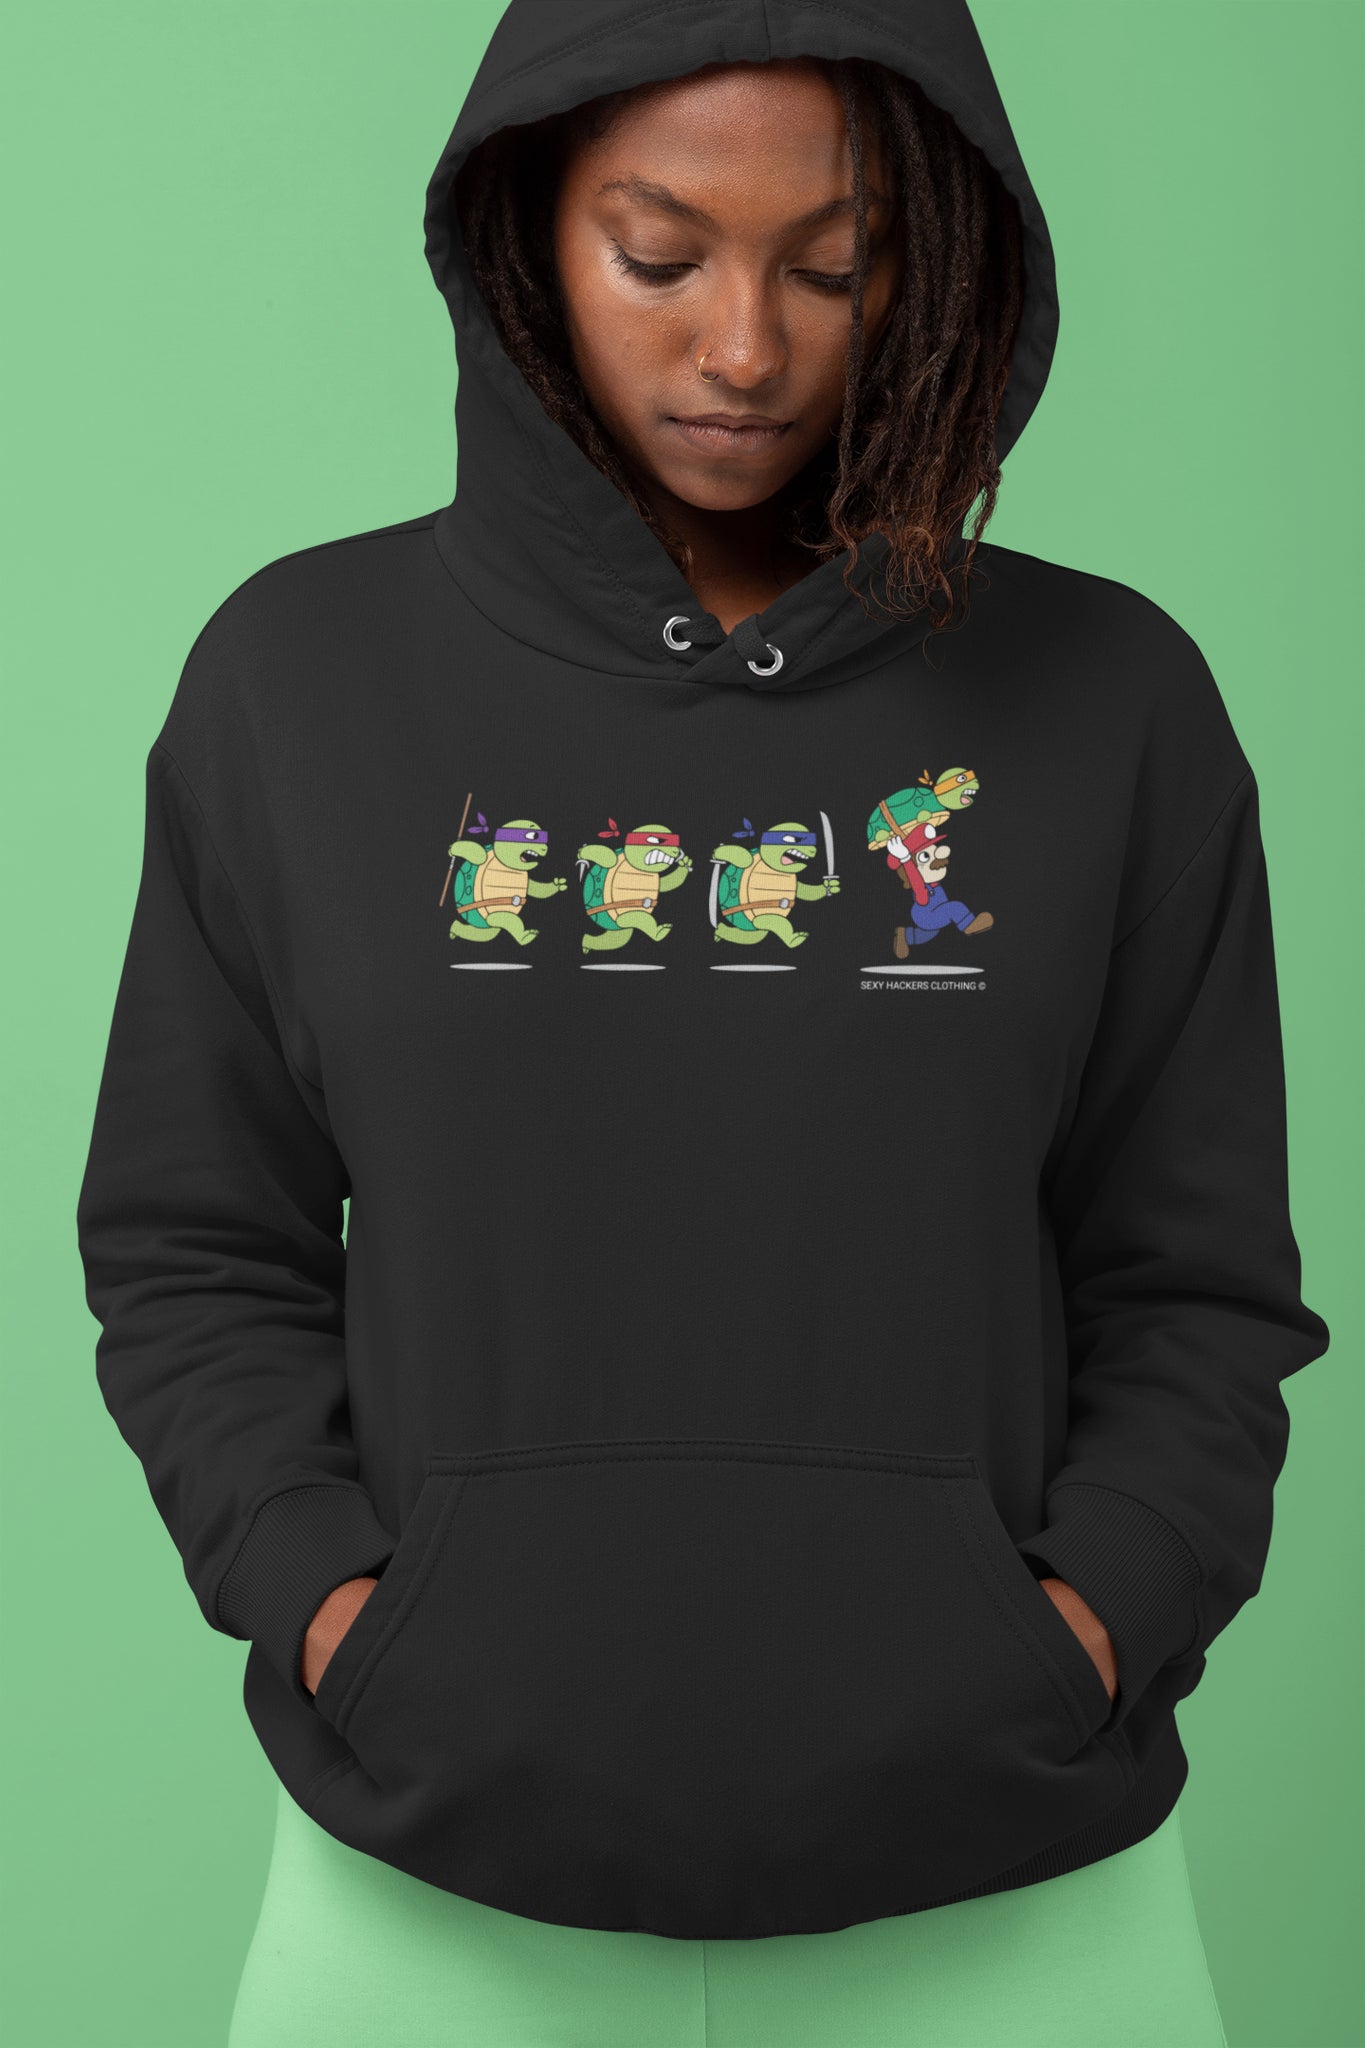 Ninja Turtles and Mario Unisex Hoodies